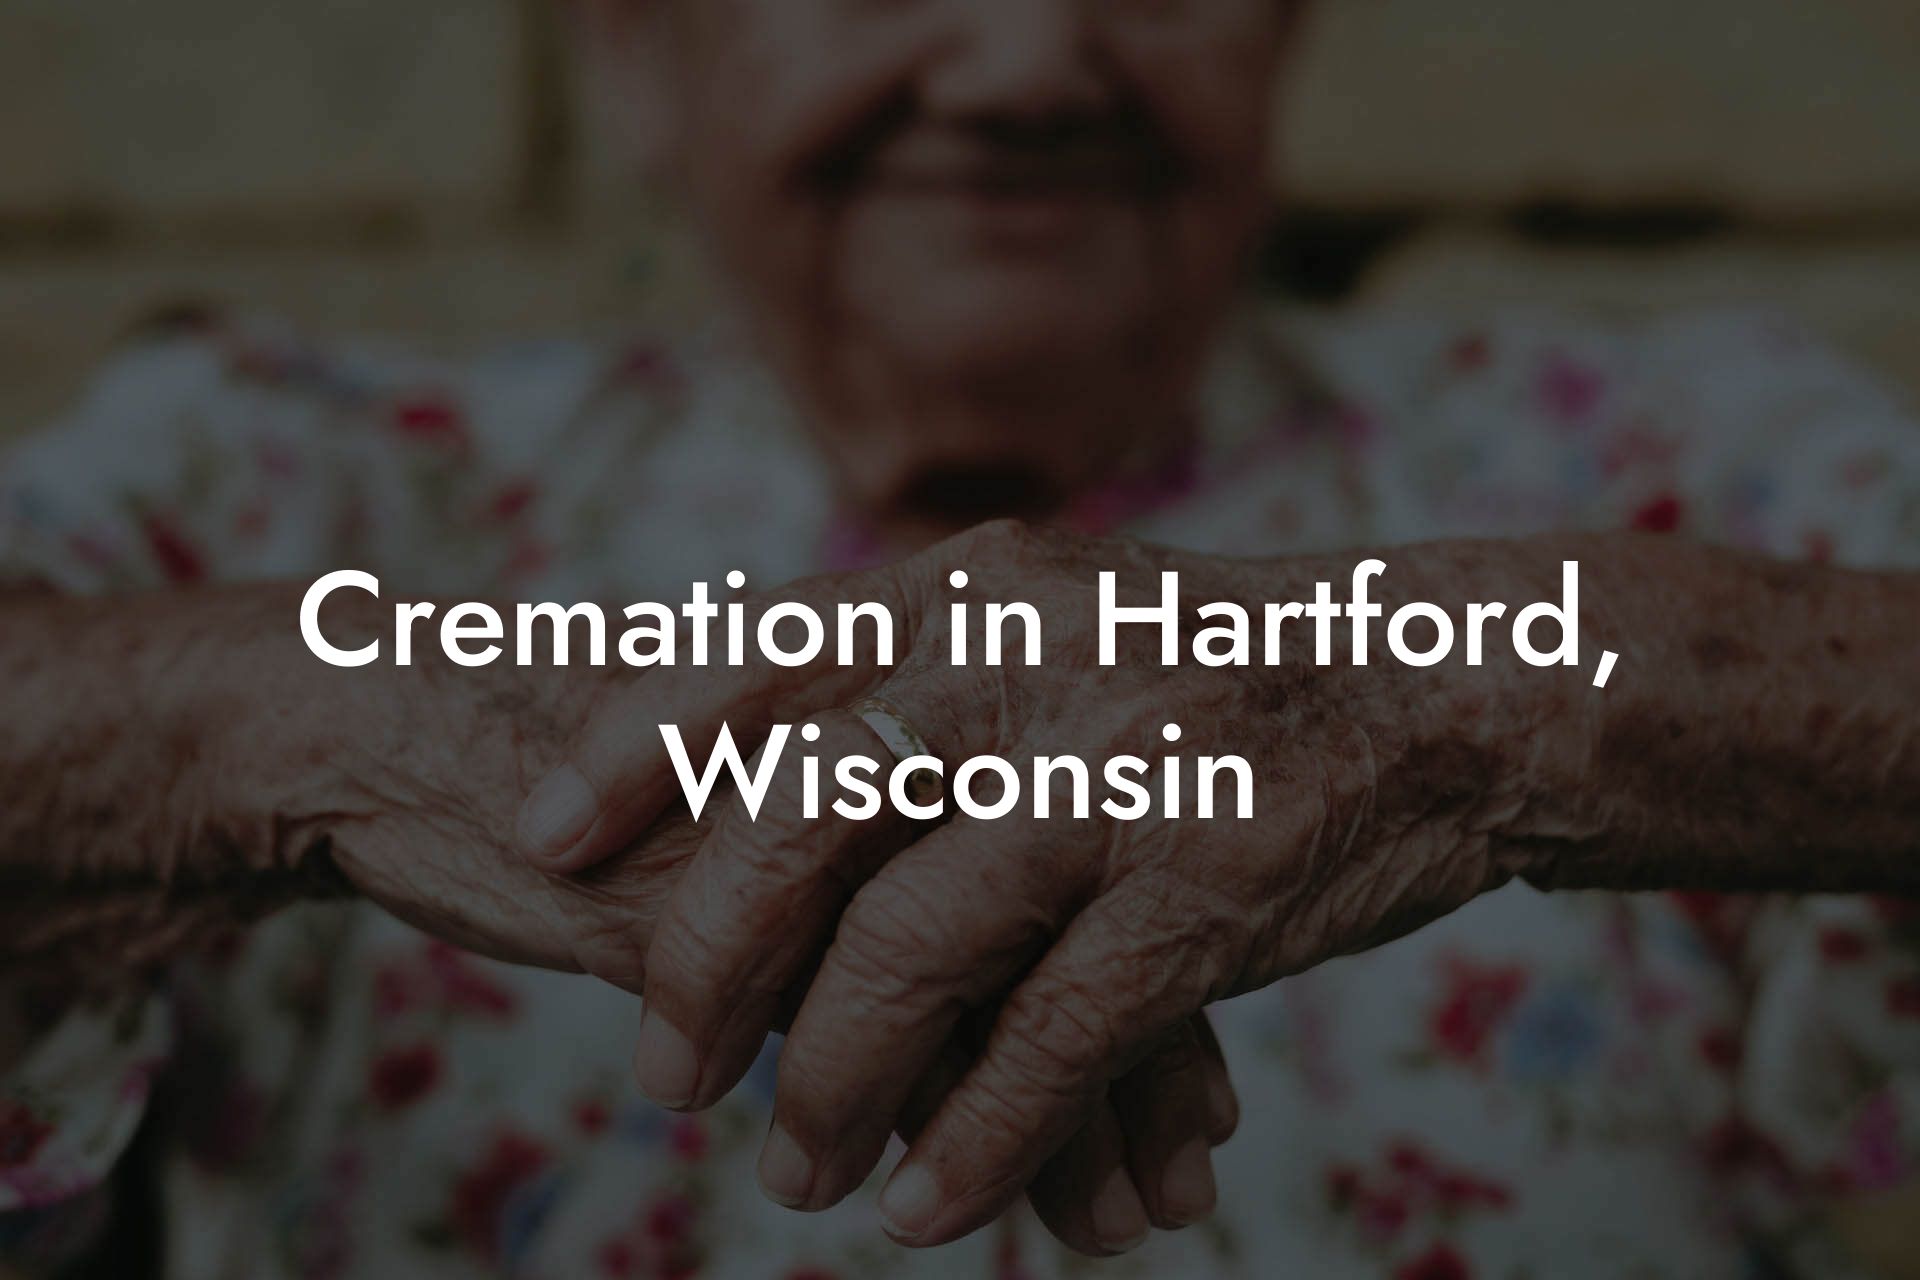 Cremation in Hartford, Wisconsin